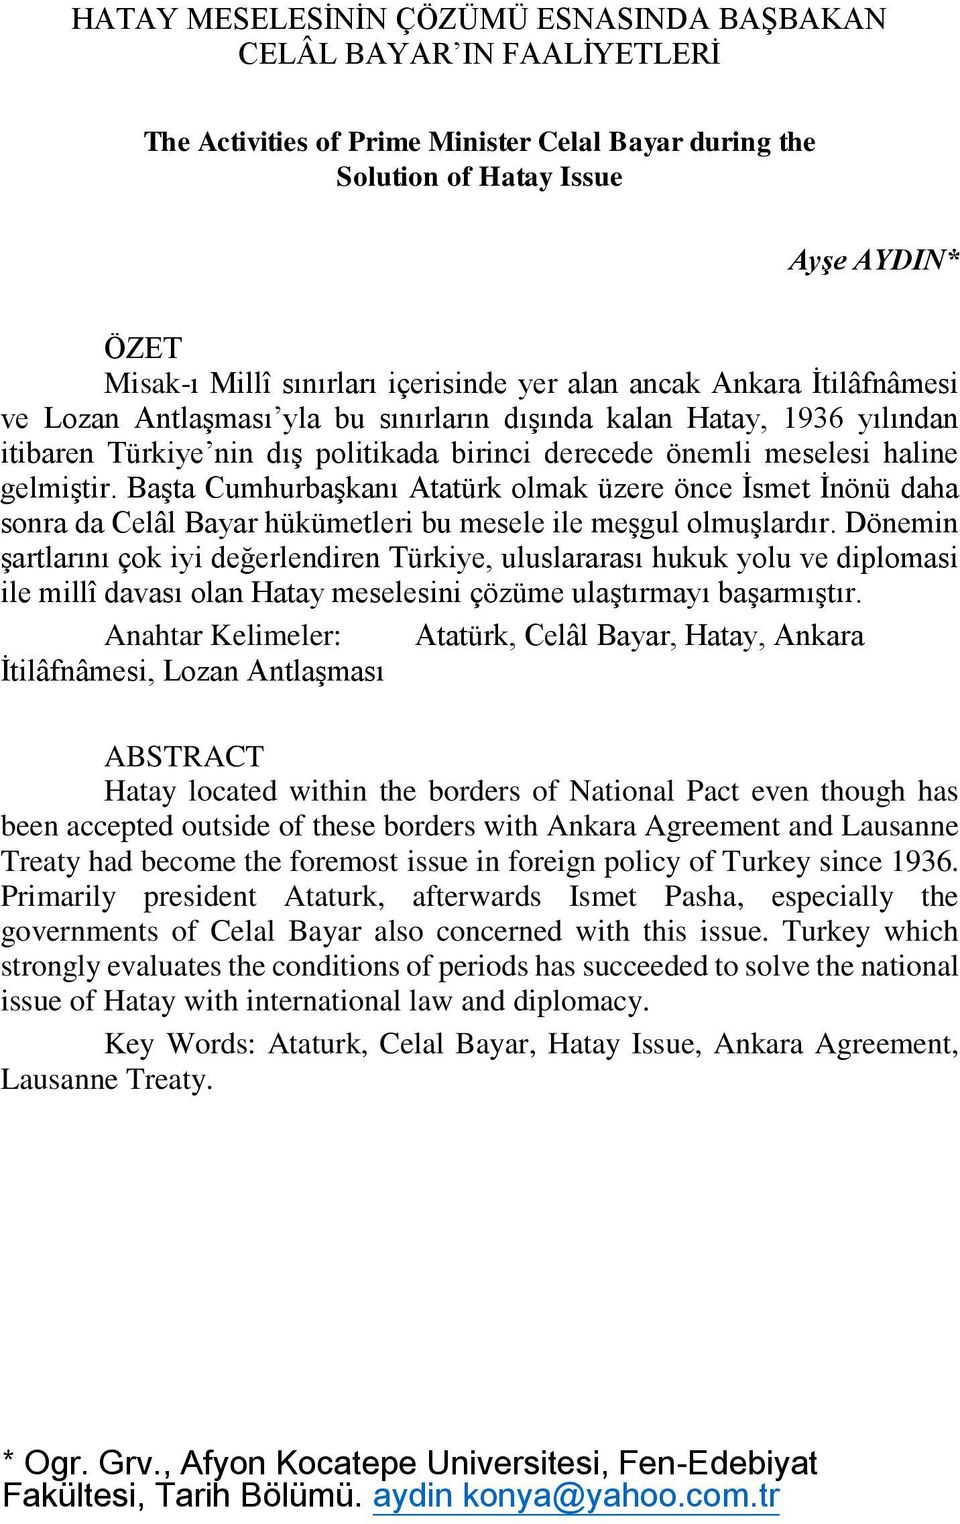 gelmiştir. Başta Cumhurbaşkanı Atatürk olmak üzere önce İsmet İnönü daha sonra da Celâl Bayar hükümetleri bu mesele ile meşgul olmuşlardır.